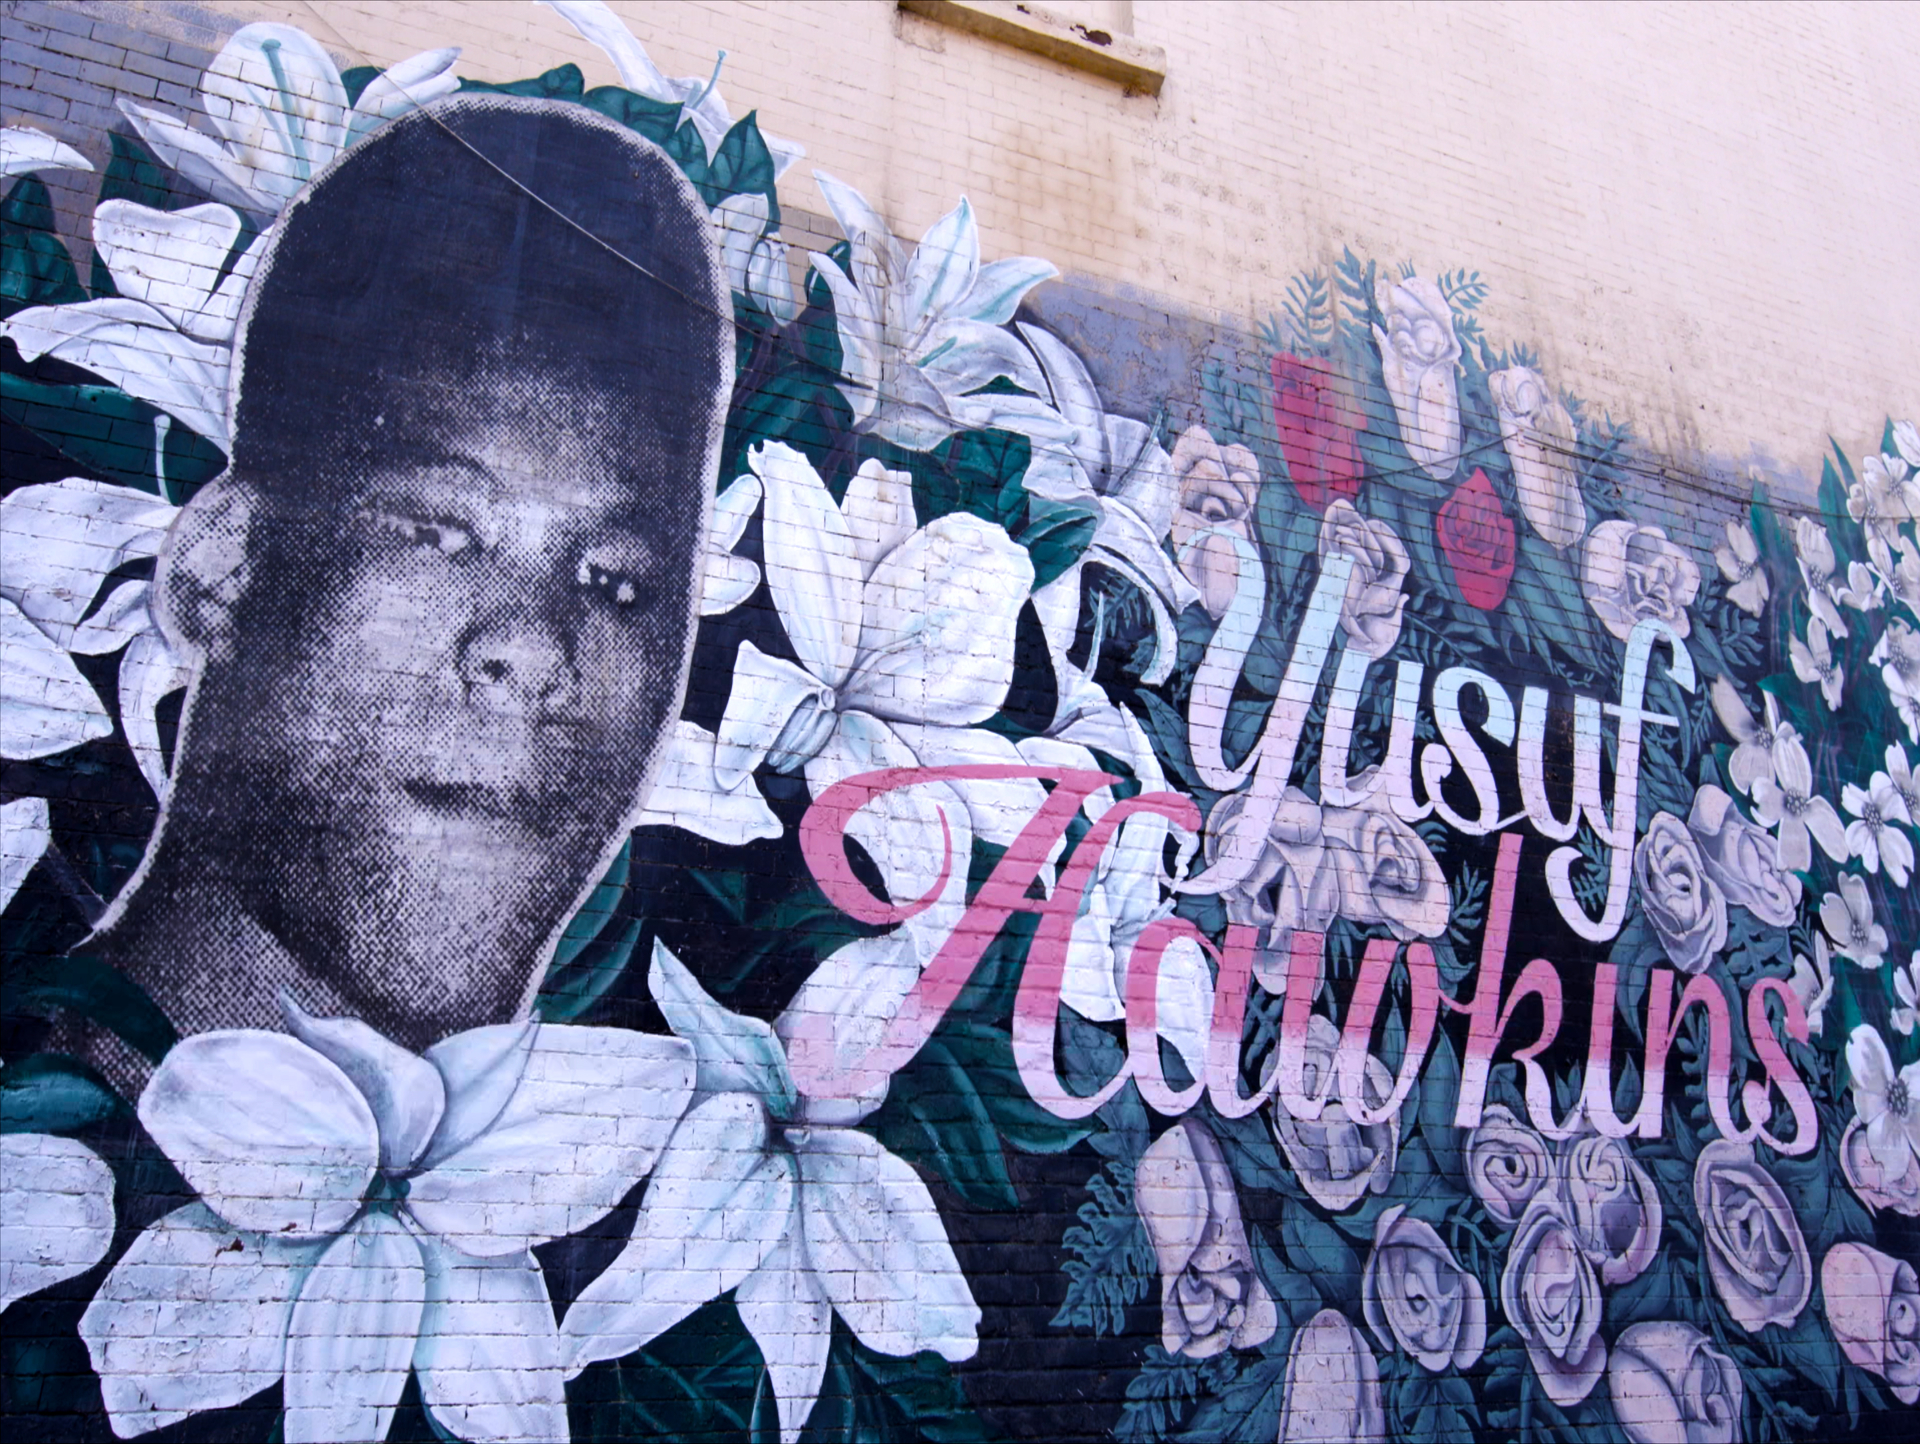 Mural dedicated to Yusuf Hawkins in Bedford-Stuyvesant, Brooklyn